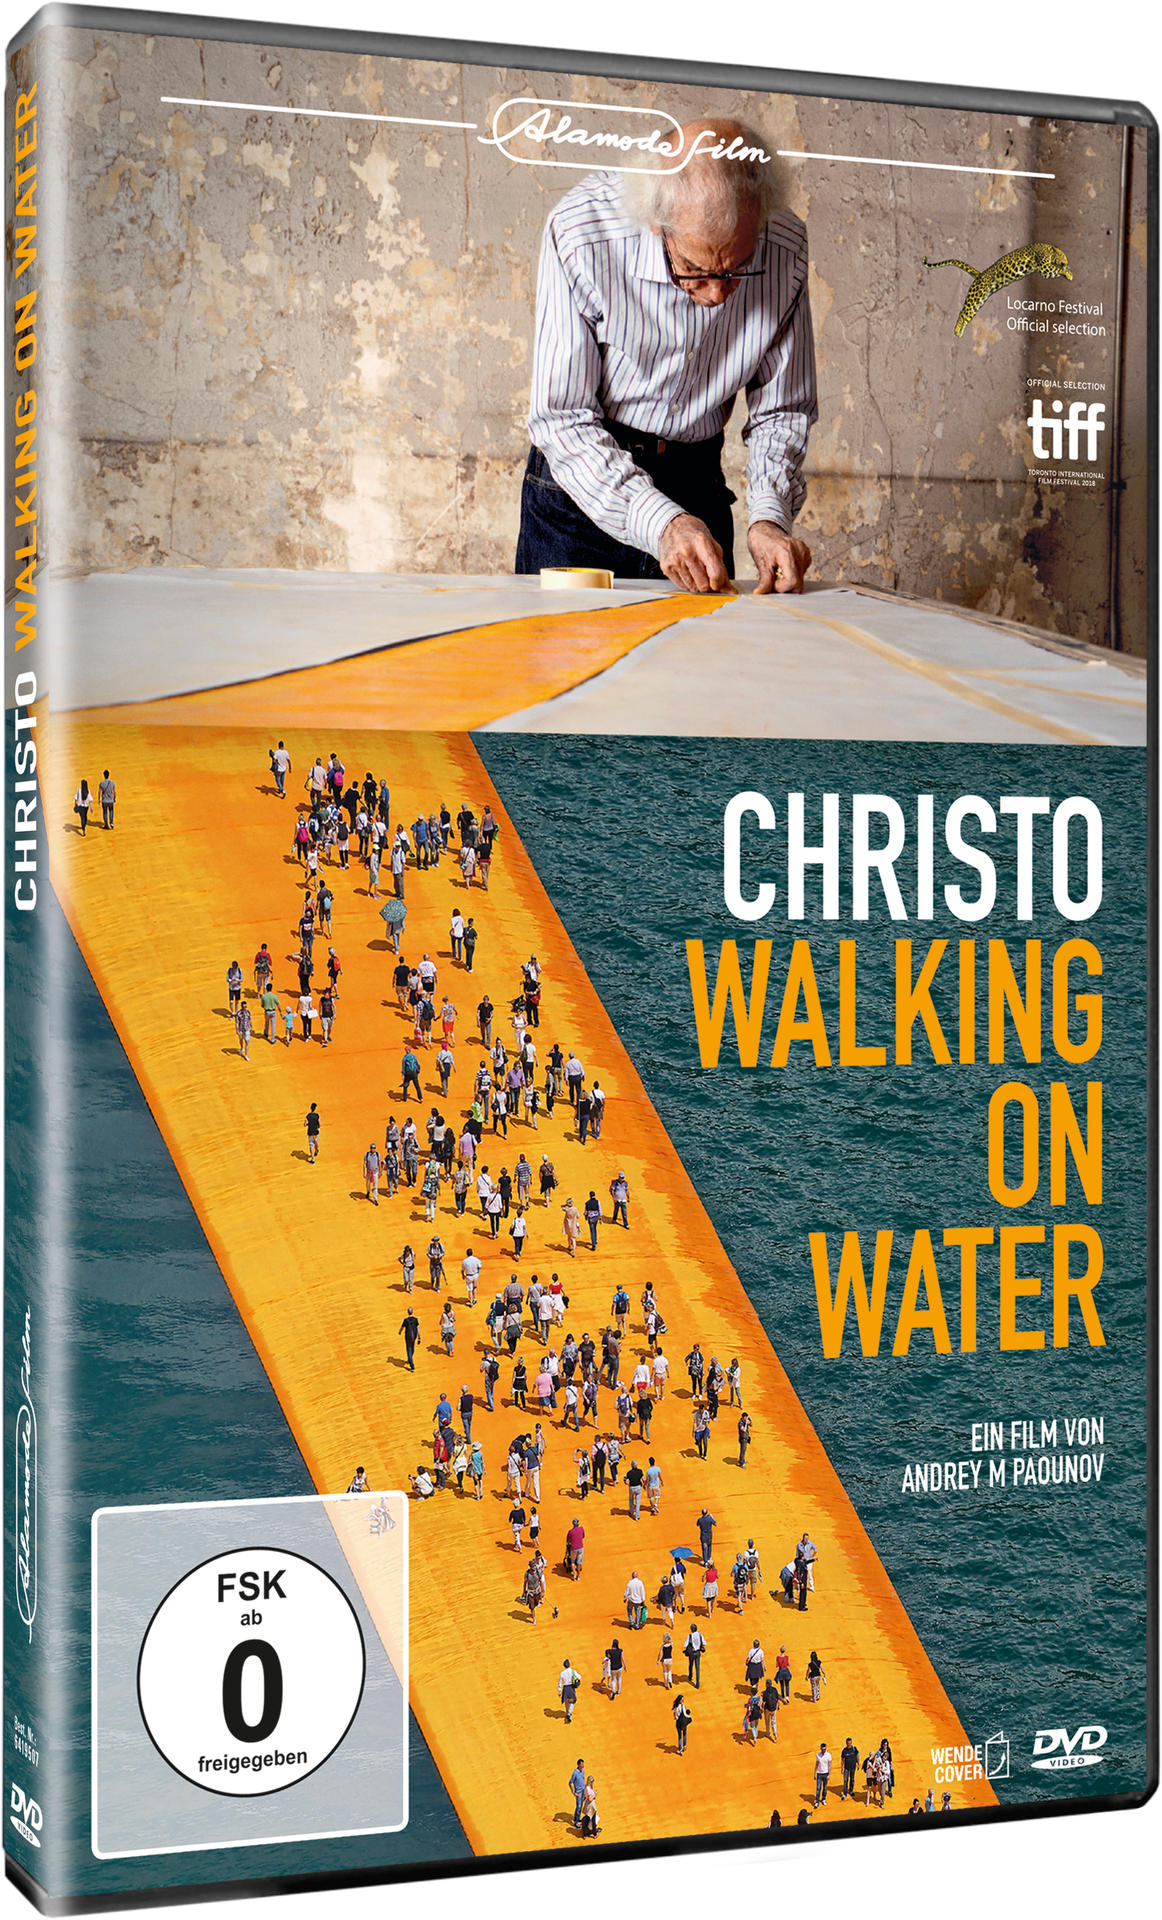 on Christo-Walking DVD Water